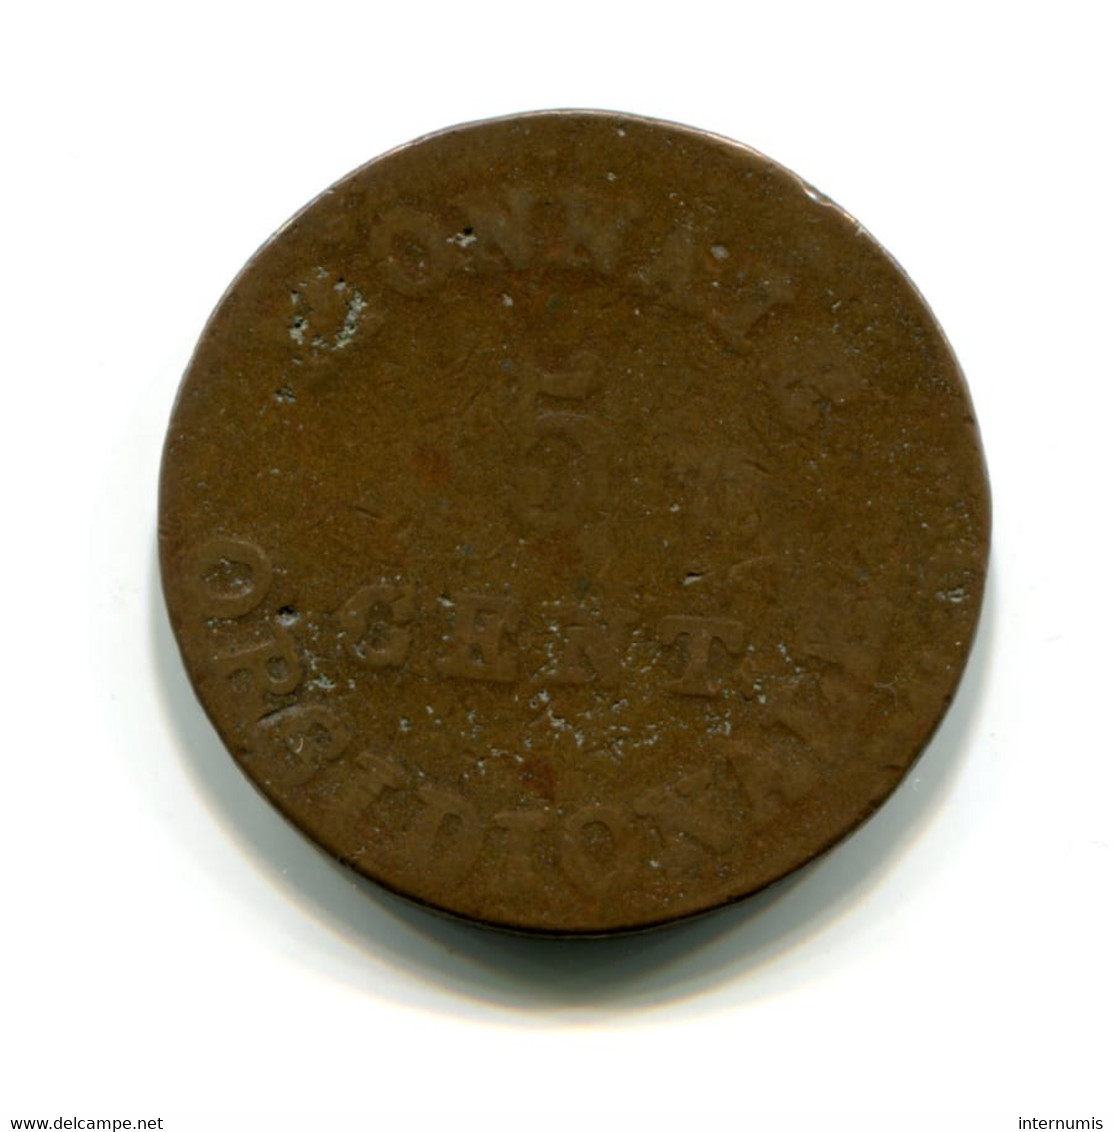 Belgique / Belgium, 5 Centimes, 1814, Siege D'Anvers - Napoléon, Bronze, ,KM#2, F.115?, G.129d, COL.11 - 1814 Siege Of Antwerp